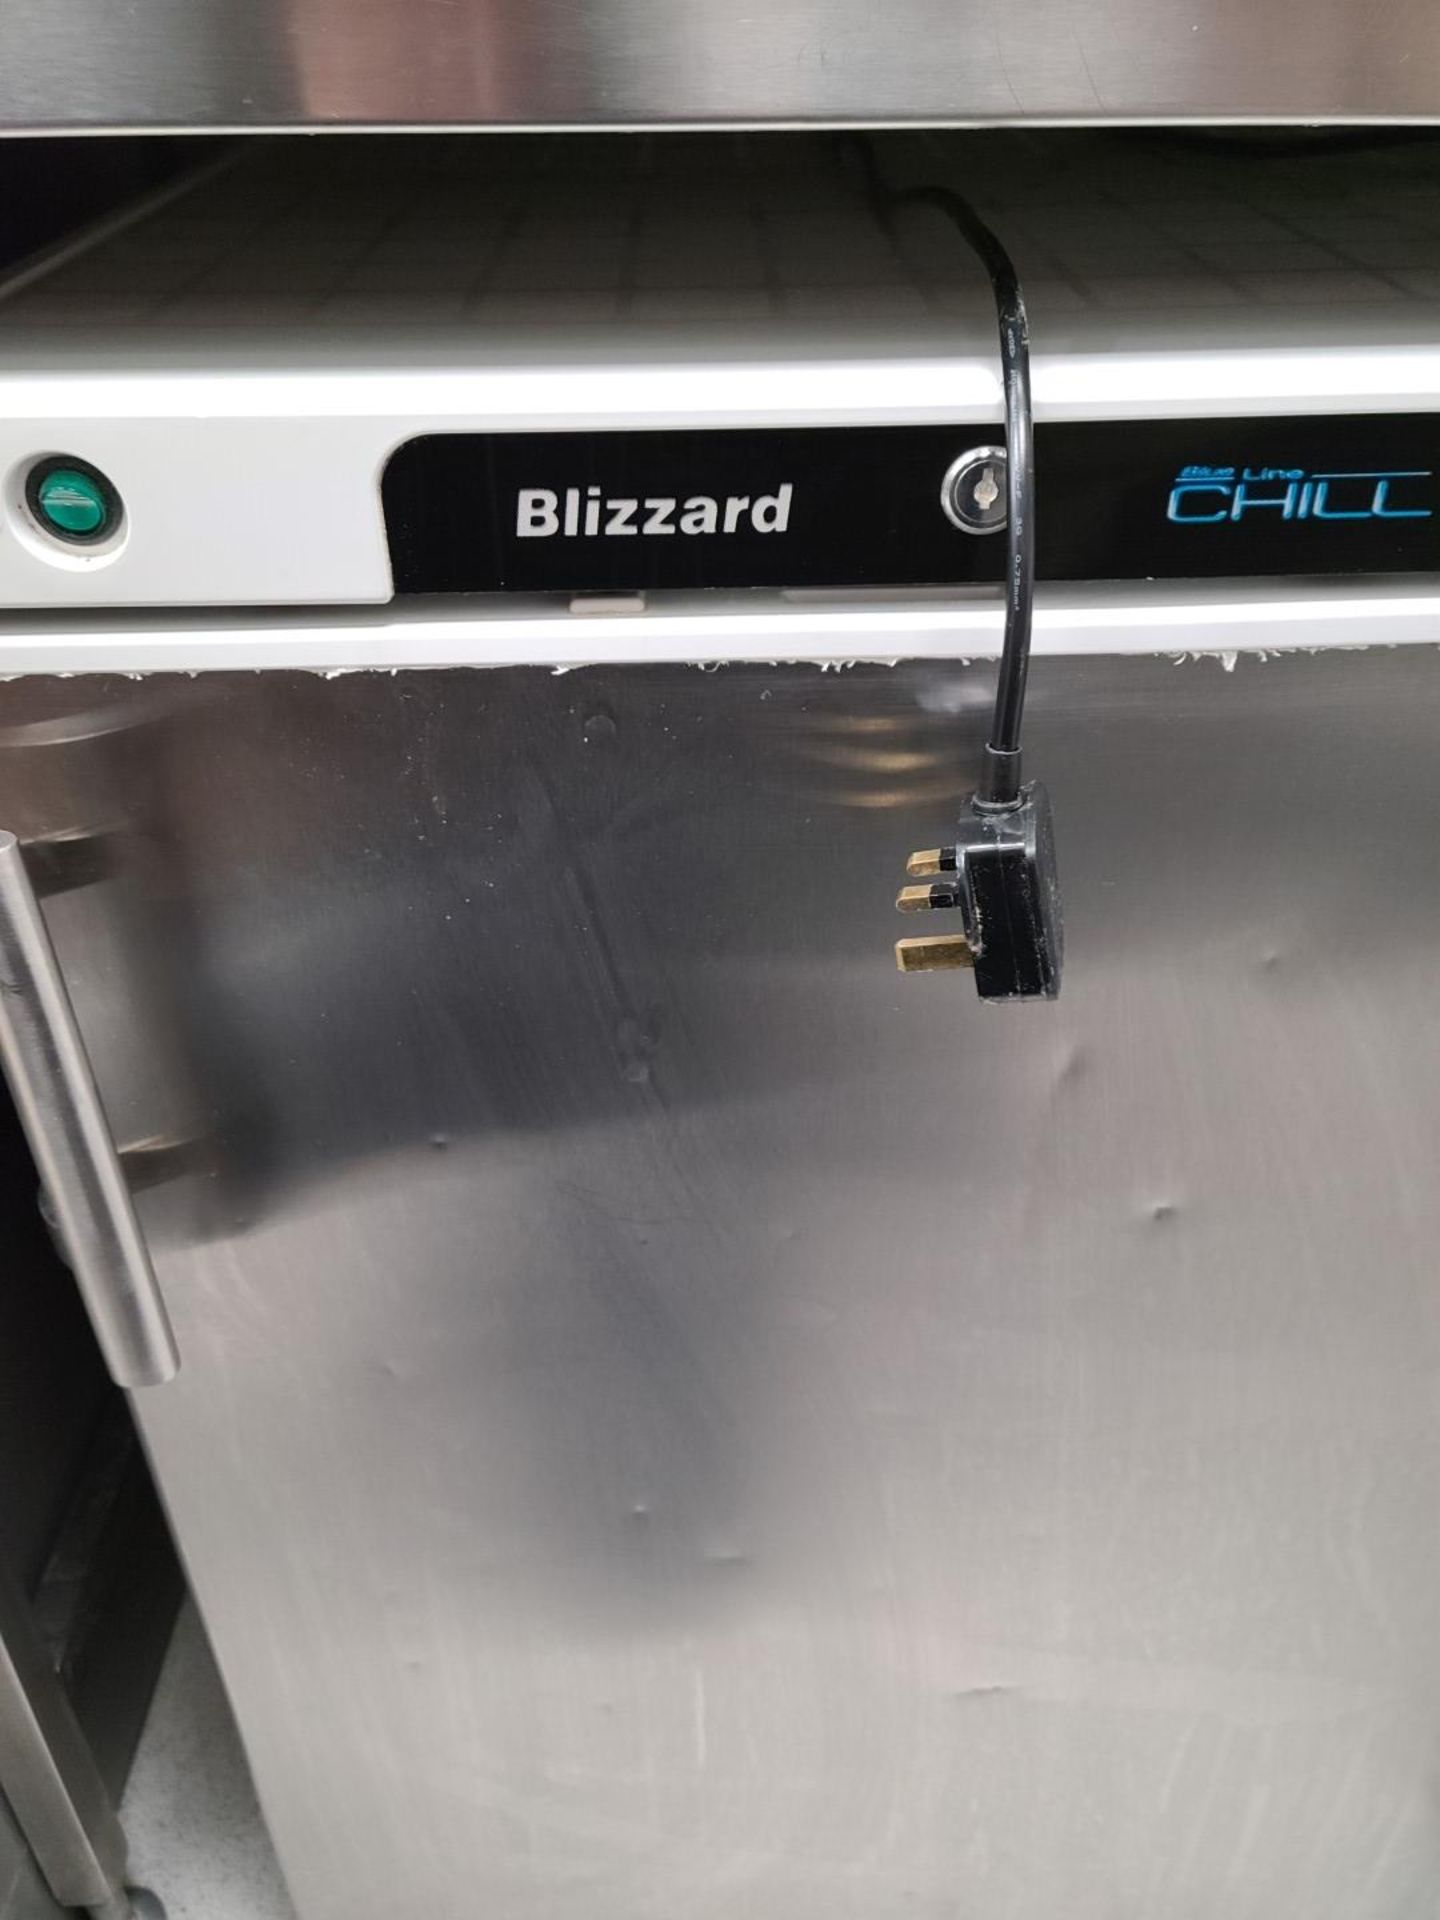 1 x BLIZZARD Efficient Stainless Steel Under Counter Storage Freezer 84cm x 60cm - Image 2 of 6